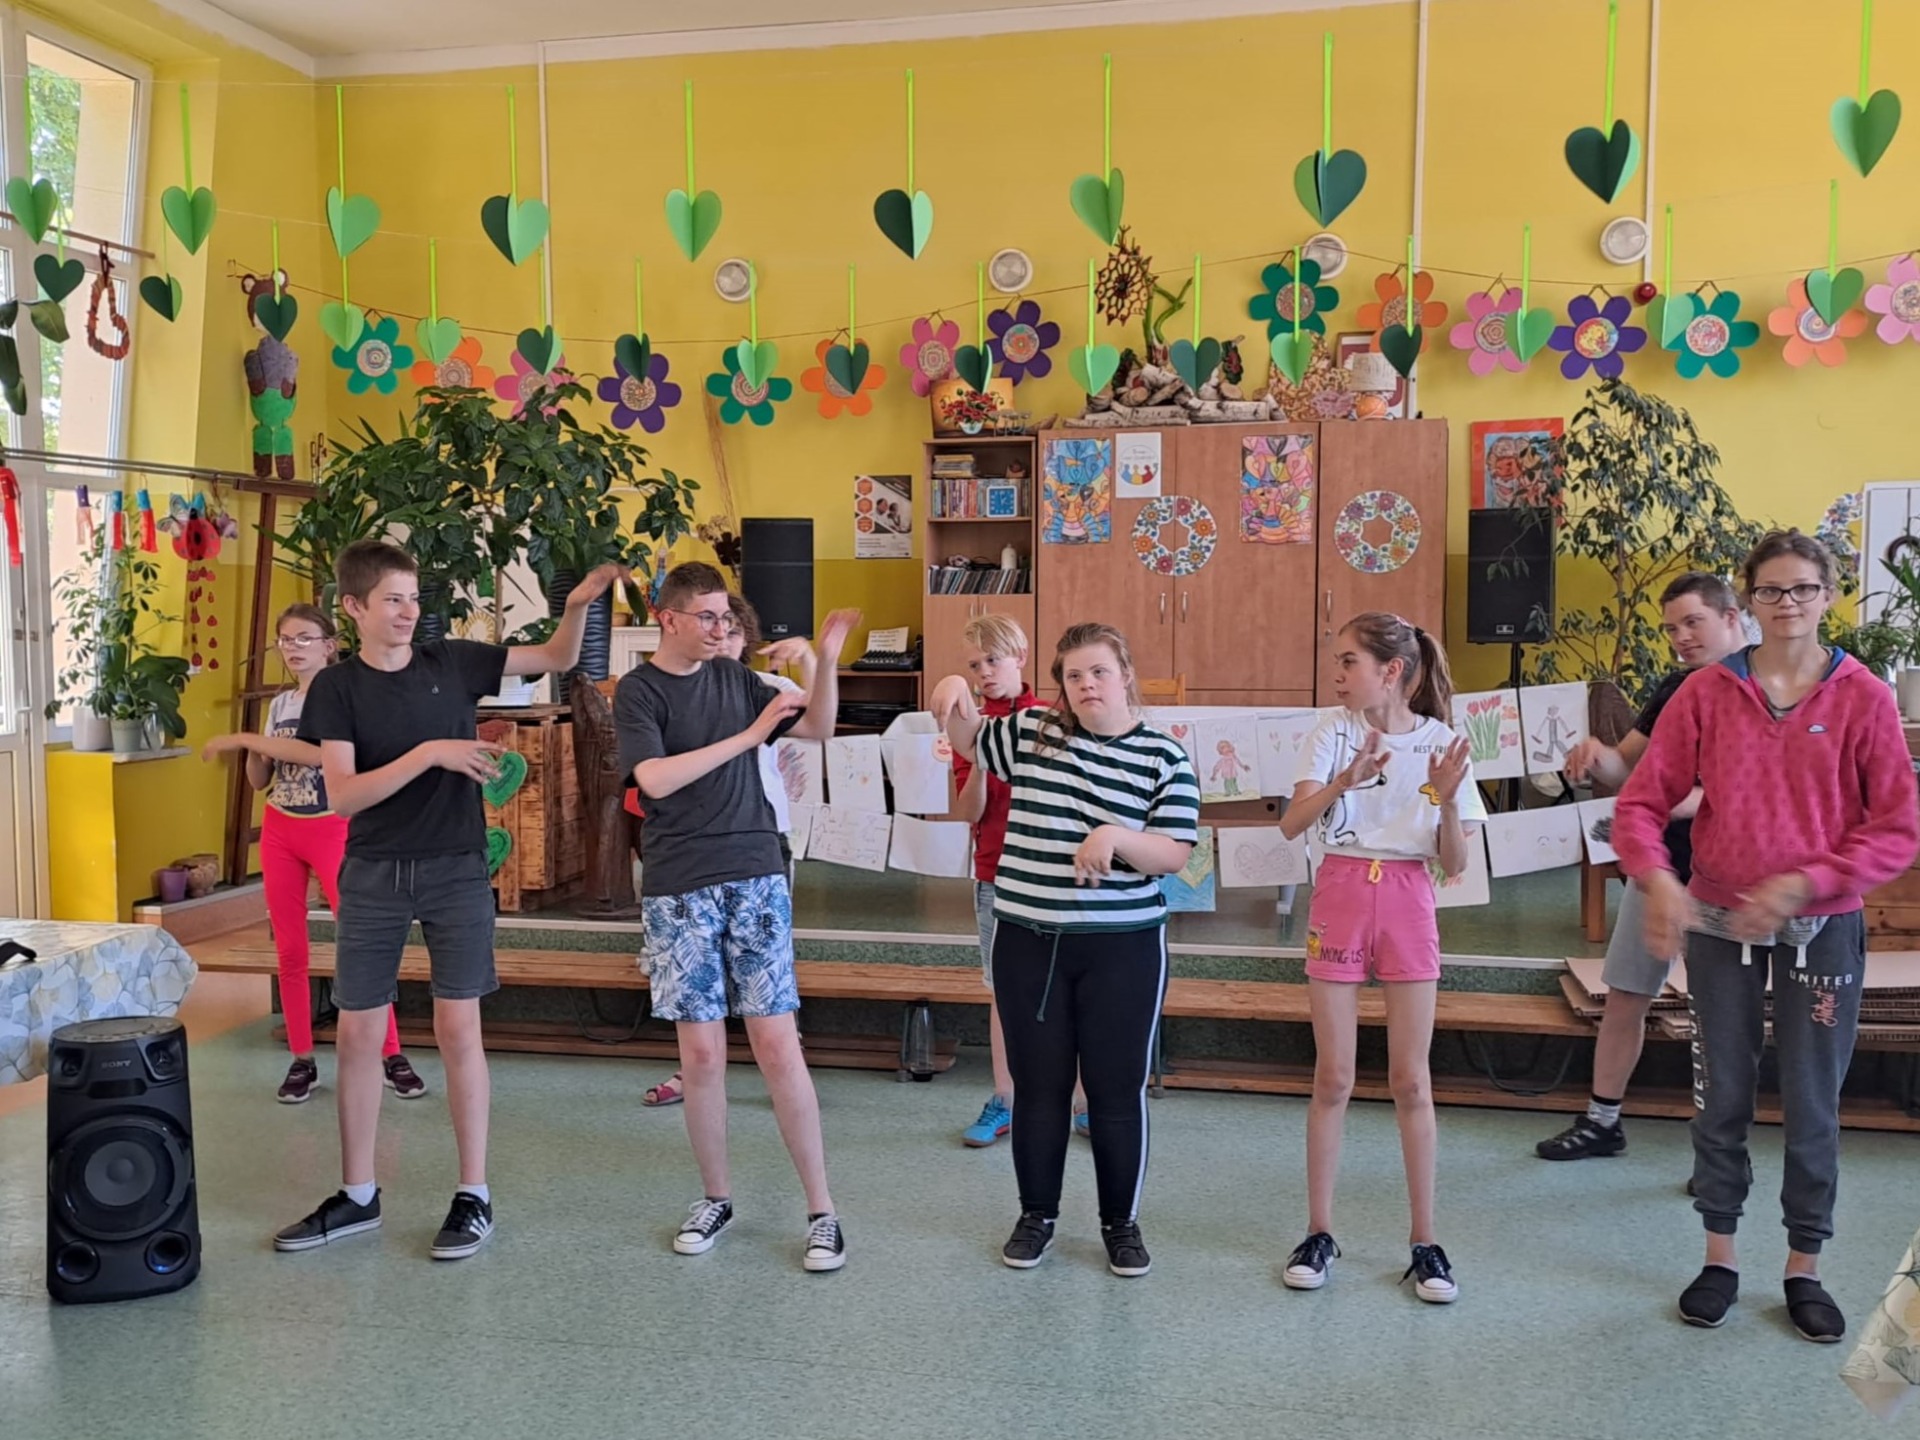 Grupa uczniów ćwicząca układ taneczny.